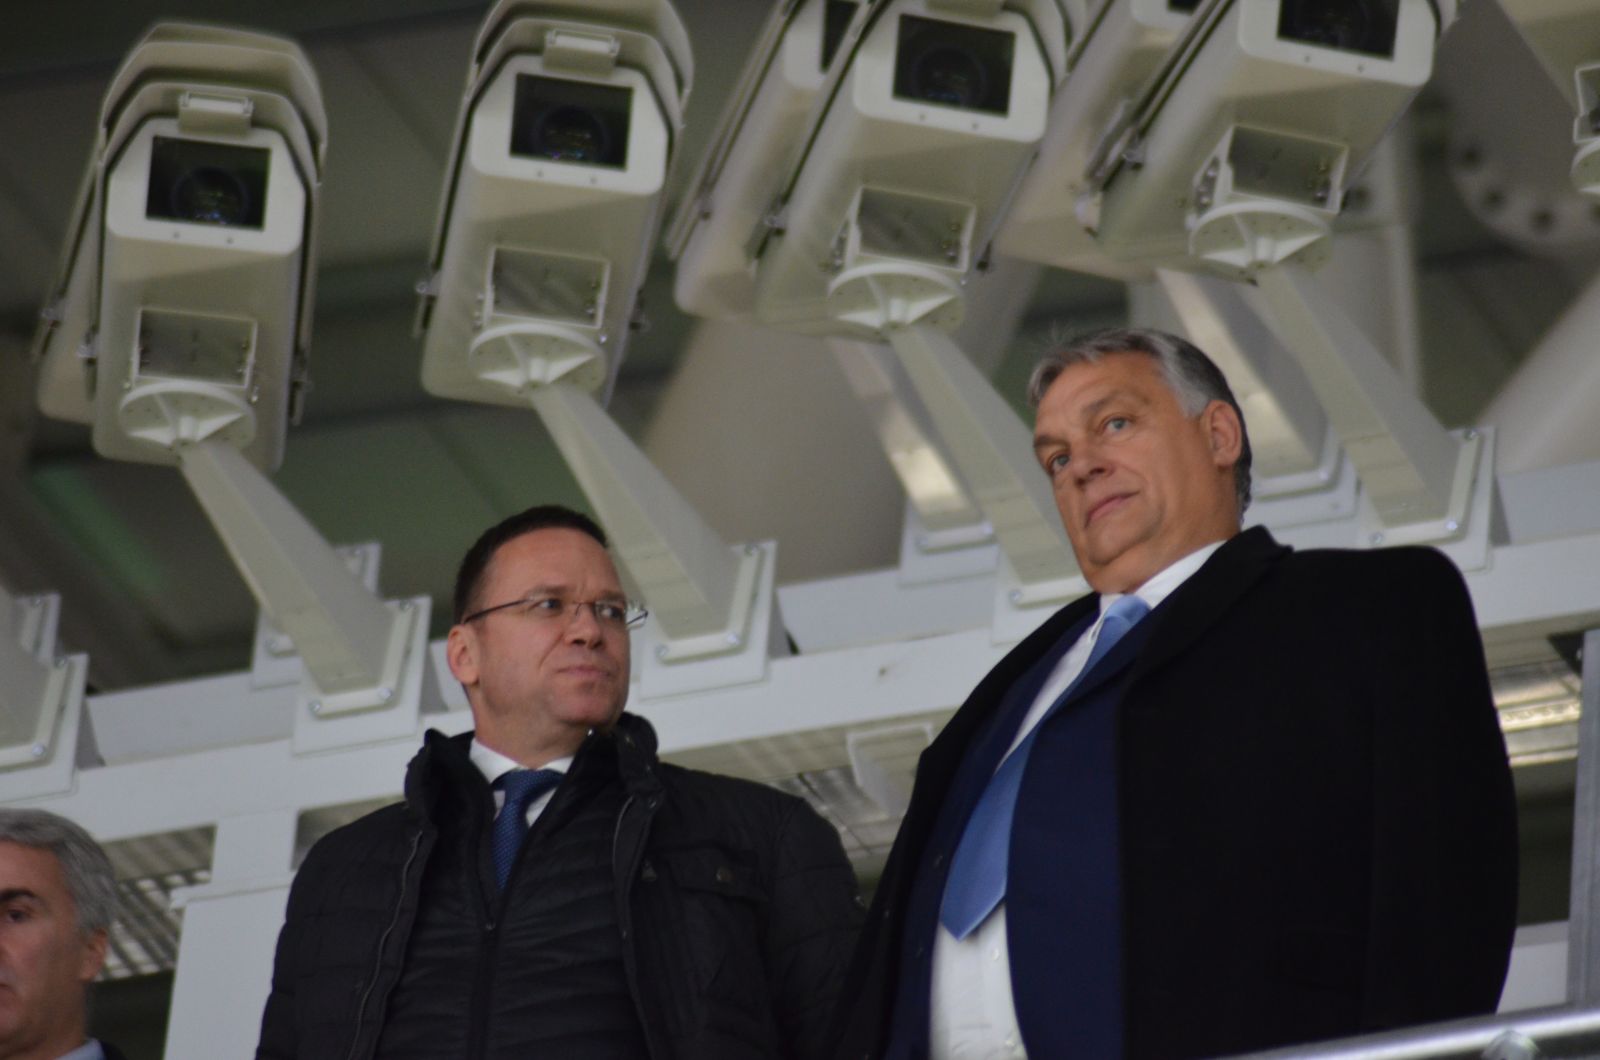 Ugyancsak a korai érkezésének köszönhetően fotózhatta le Orbán Viktor magyar miniszterelnököt, aki alig pár perccel azután, hogy a stadion kapuit megnyitották a jeggyel rendelkezők előtt, Fürjes Balázs kormánybiztos társaságában felkapaszkodott a Puskás Aréna lelátójának legfelső sorába, hogy – a biztonsági kamerák alatt – az ottani kilátást is letesztelje.
